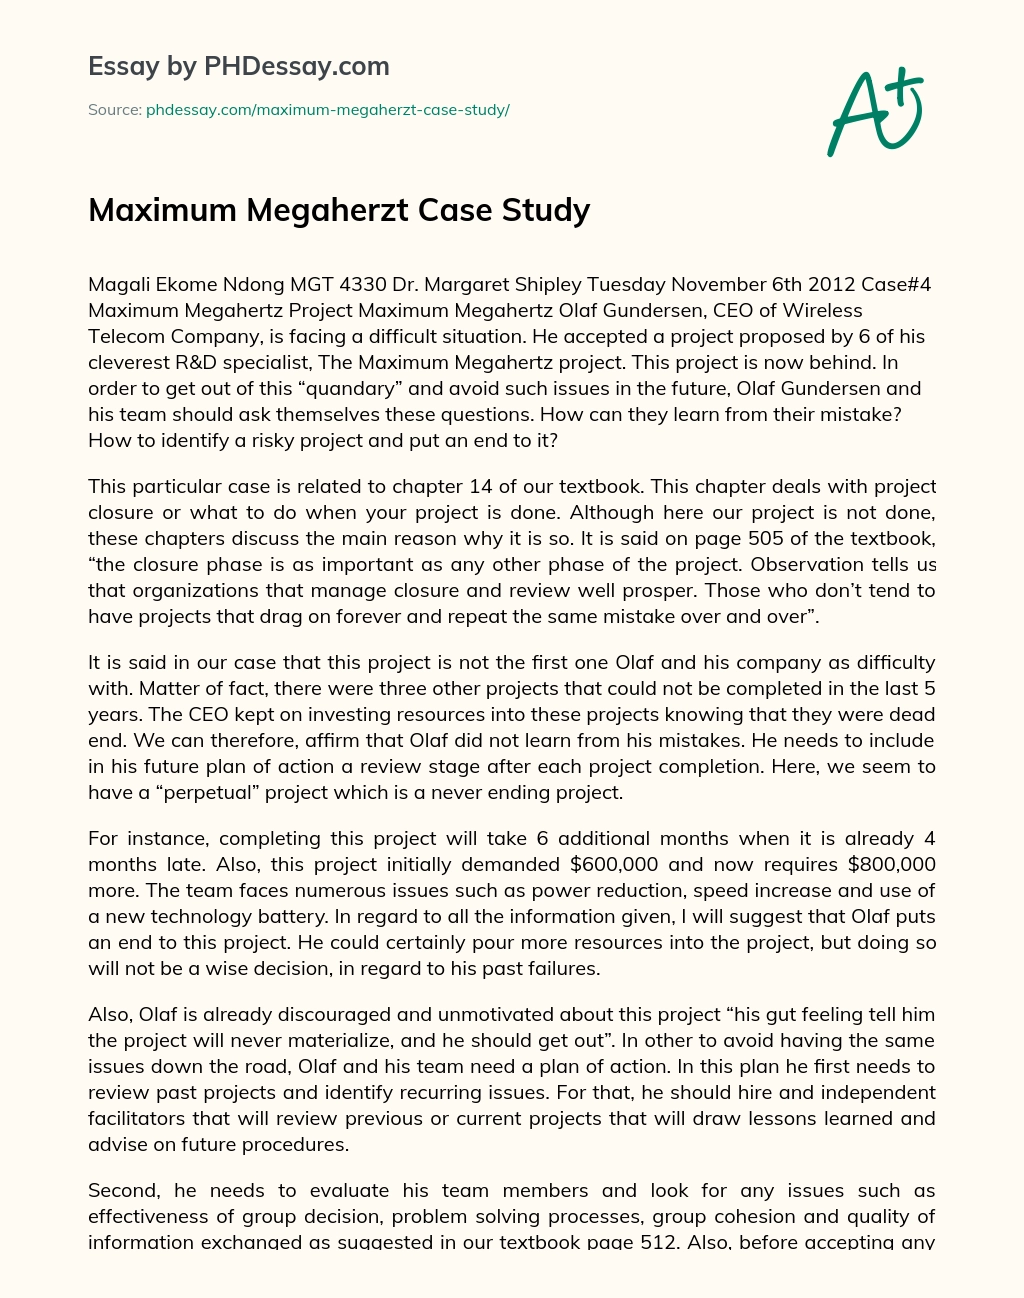 Maximum Megaherzt Case Study essay